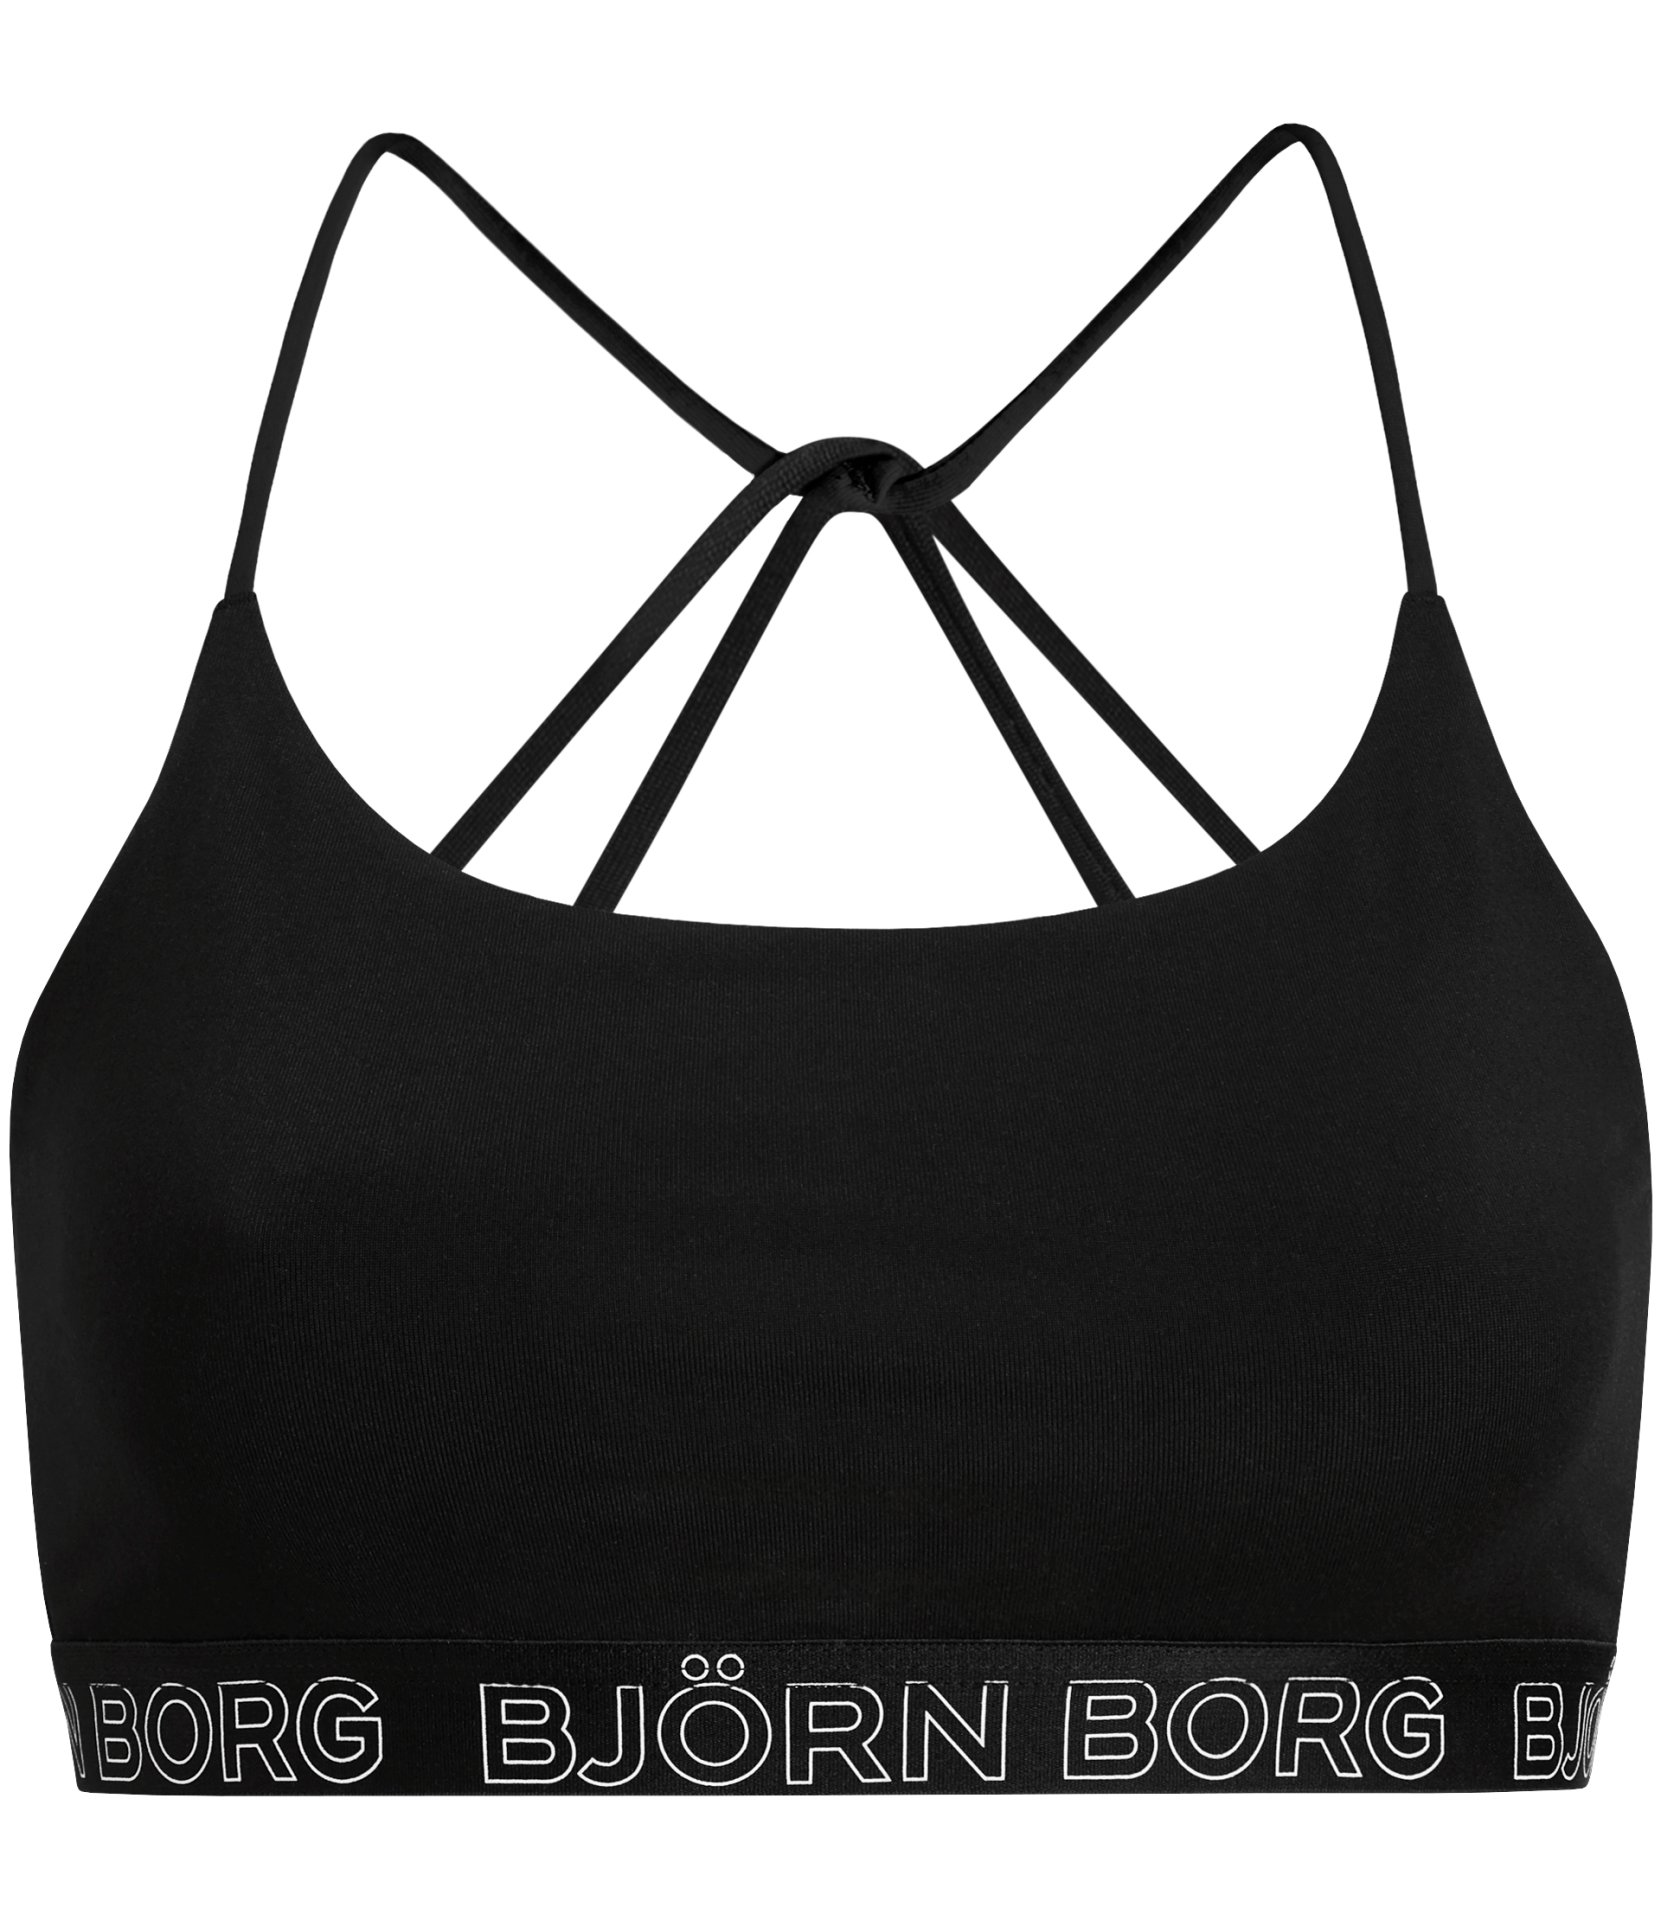 Γυναικεία/Ρούχα/Αθλητικά/Μπουστάκια BJORN BORG - Γυναικείο αθλητικό μπουστάκι BJORN BORG SOFT μαύρο